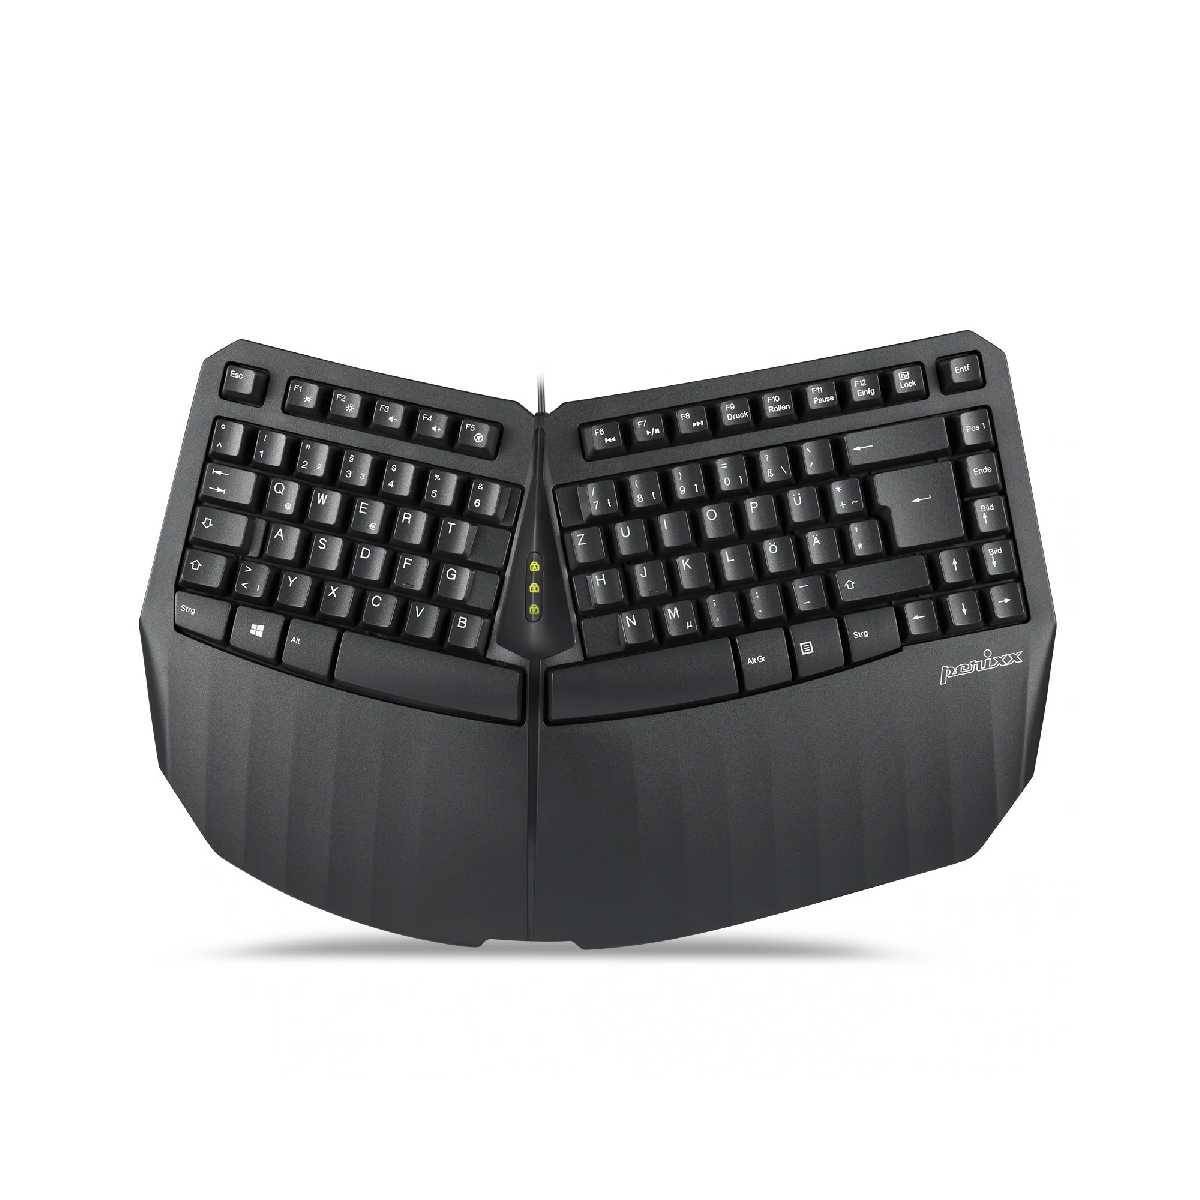 Perixx PERIBOARD 413 DE B ergonomische Mini Tastatur schwarz